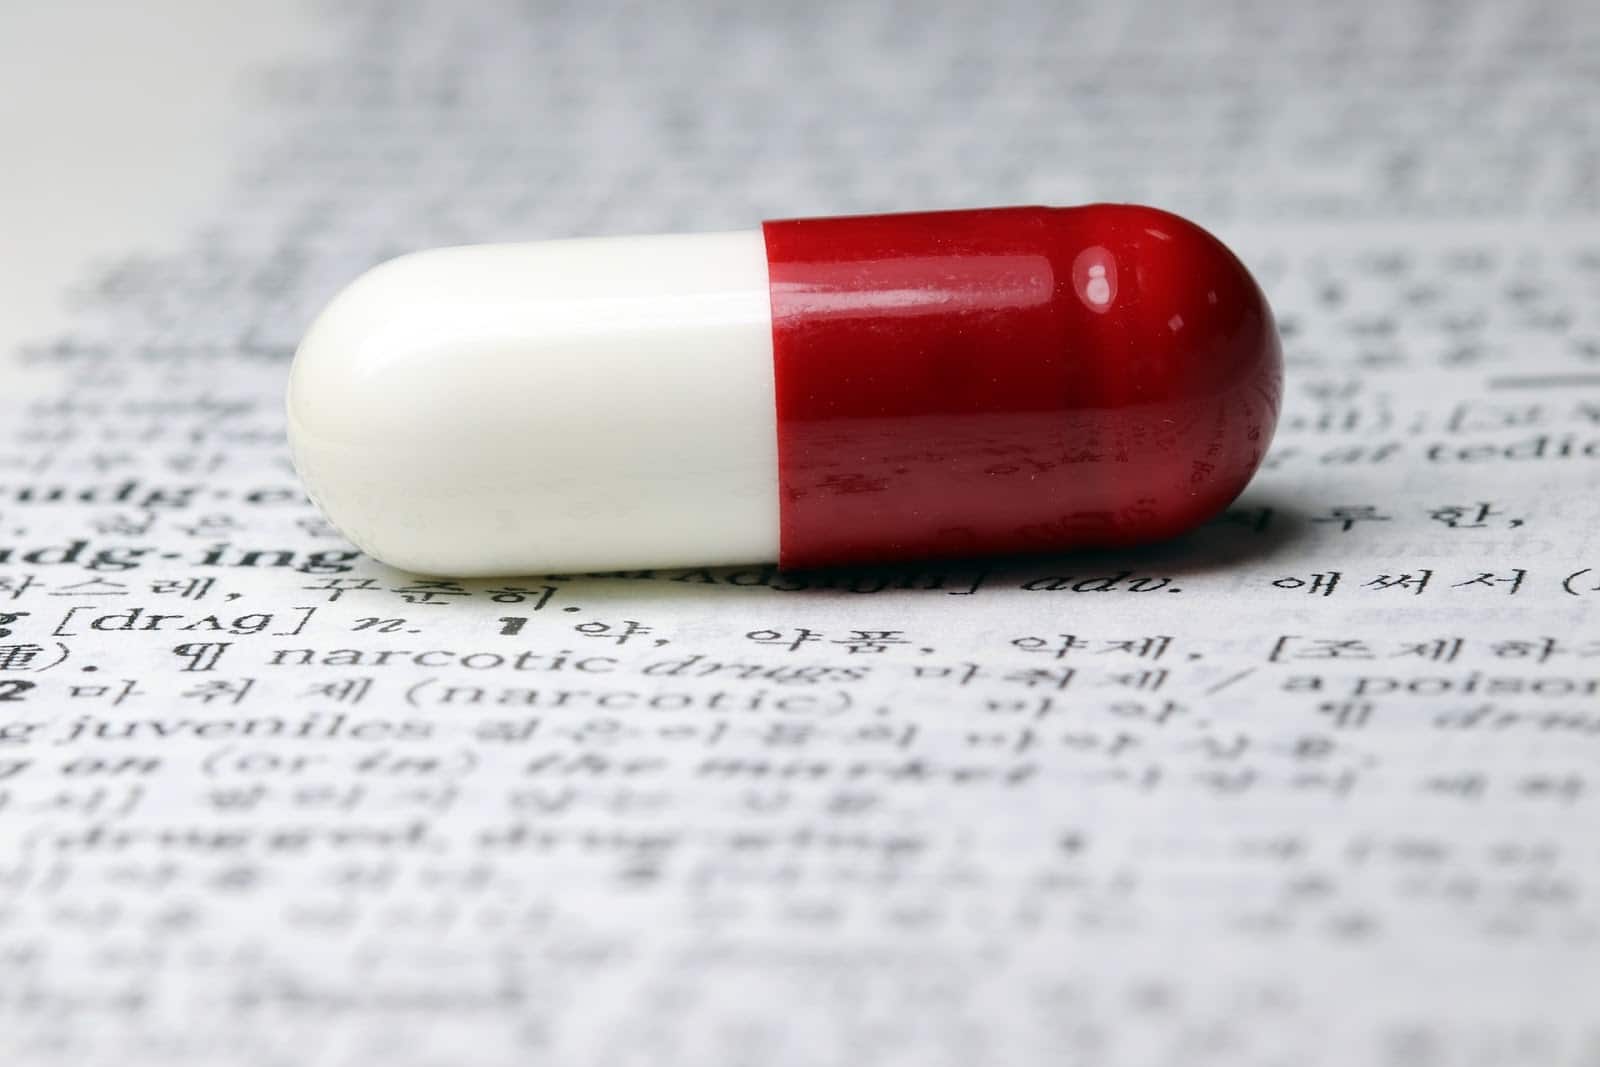 Trabajos de farmacéutico de trabajo desde casa: una píldora en una página con escritura técnica